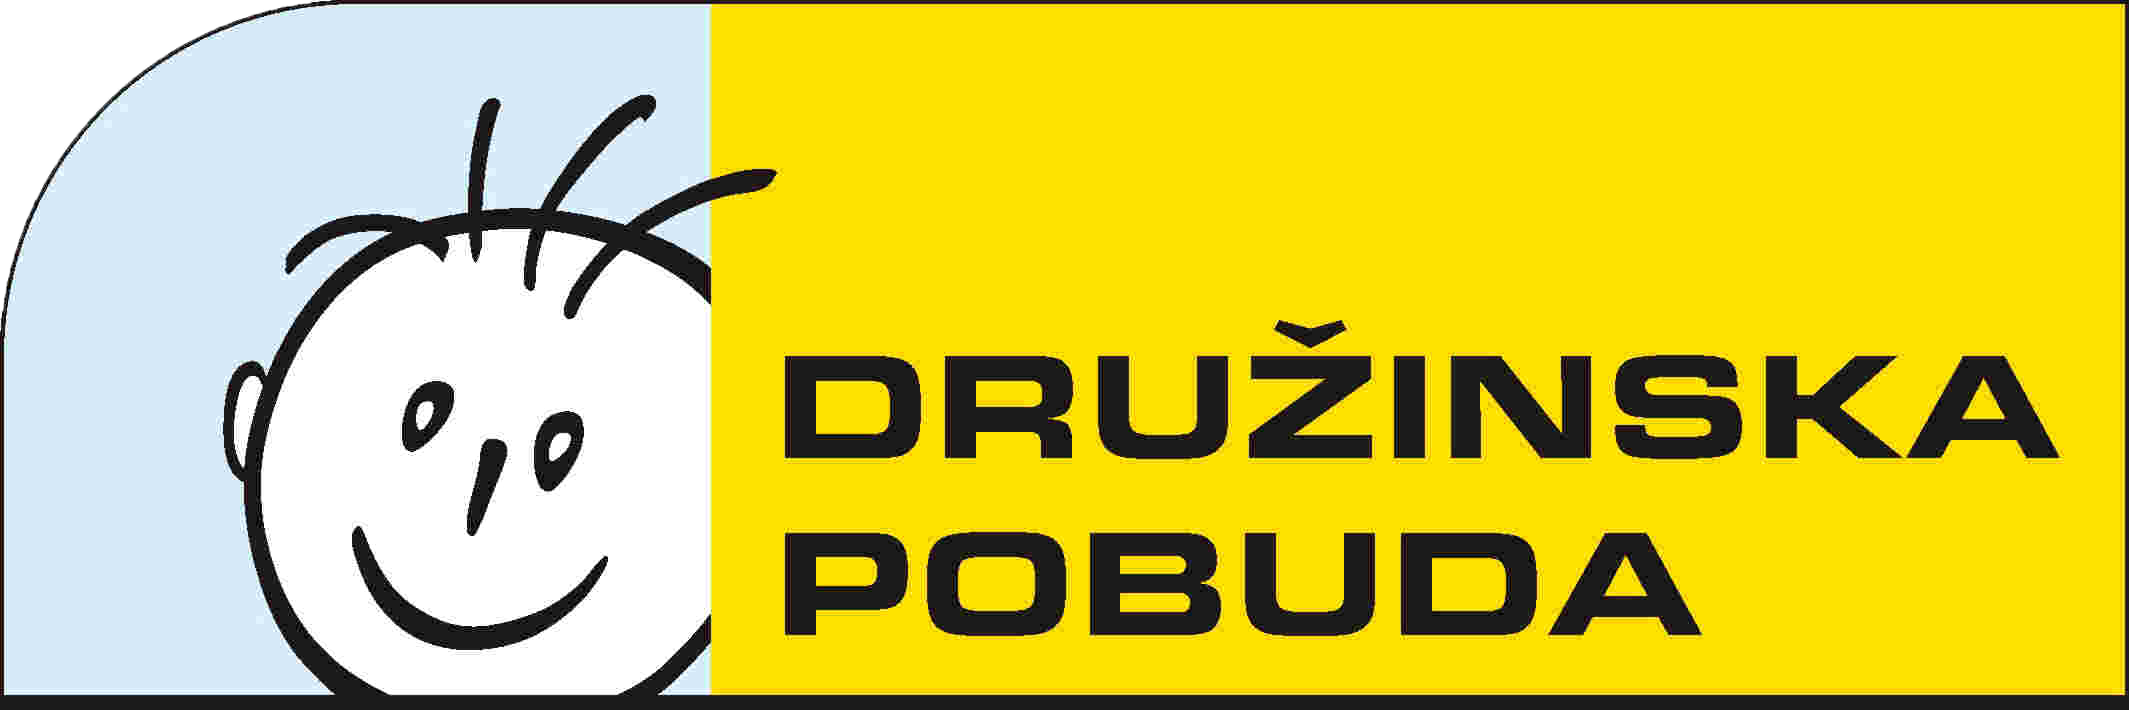 Logo Druzinska Pobuda2